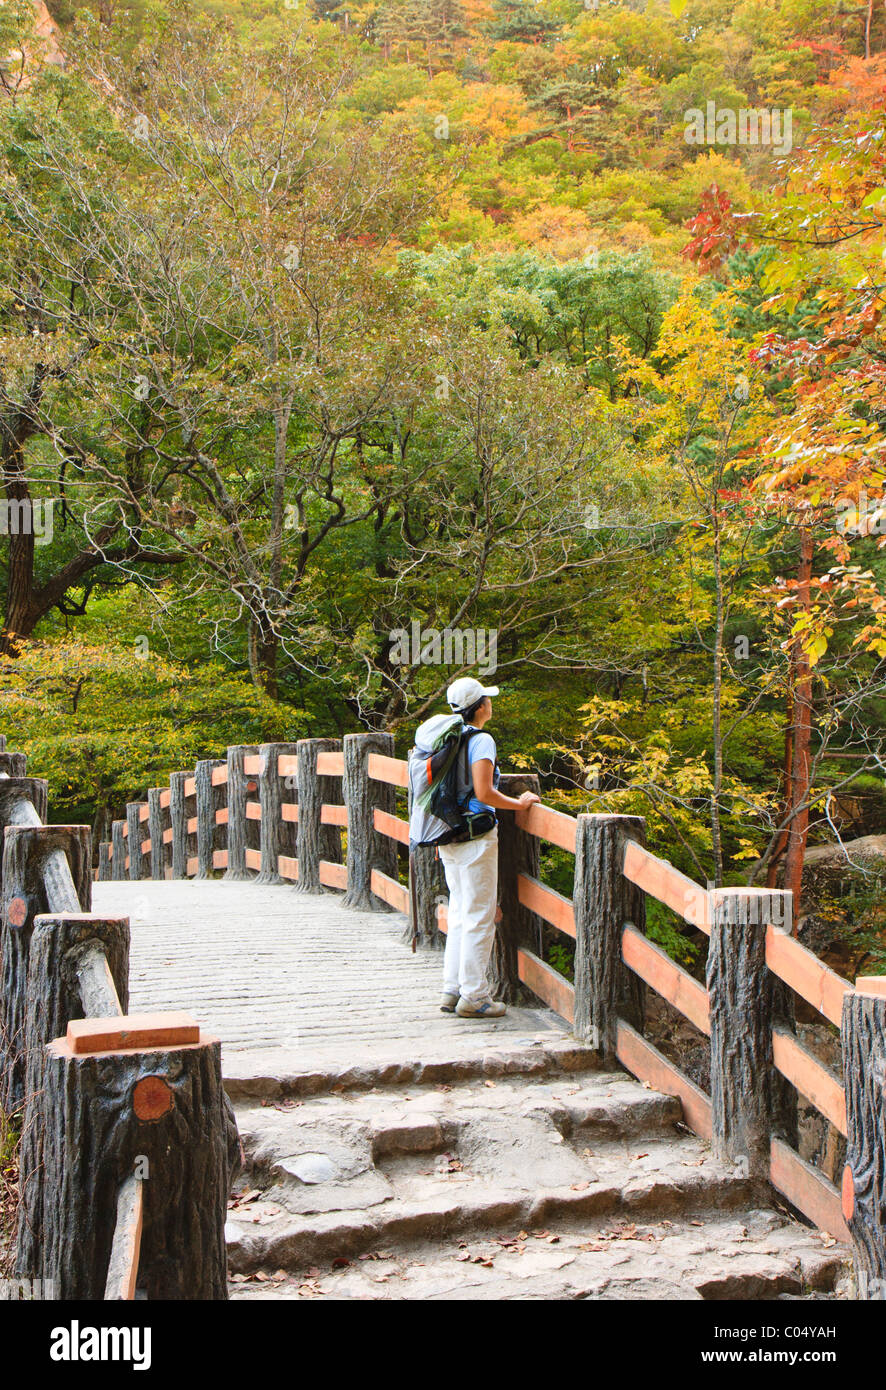 Randonneur sur pont voûté, Cheonbul-dong Valley, le Parc National de Seoraksan, Corée du Sud Banque D'Images